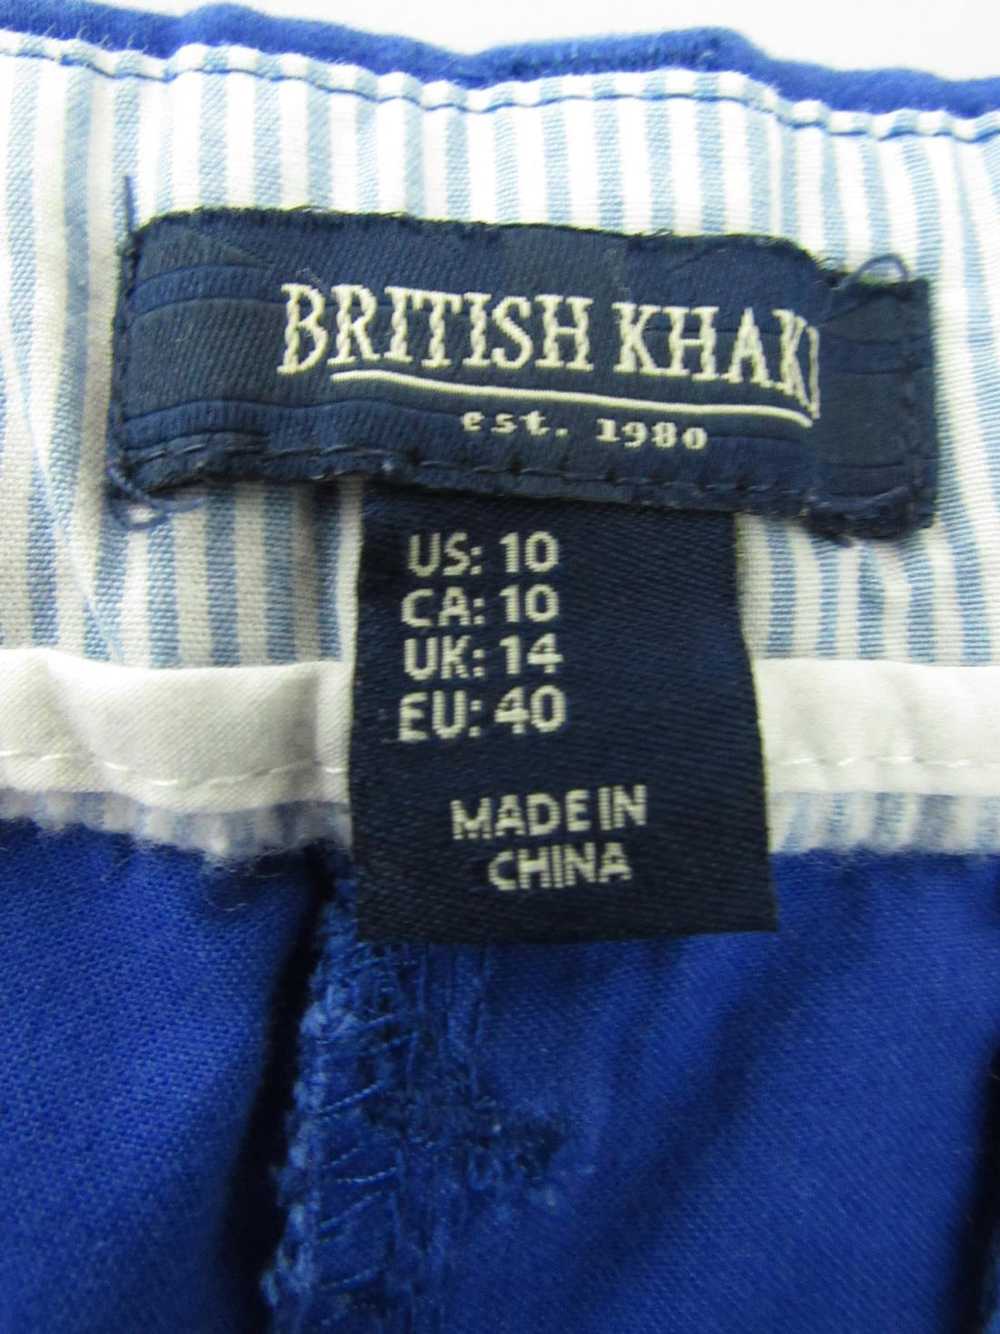 British Khaki Chino Shorts - image 3